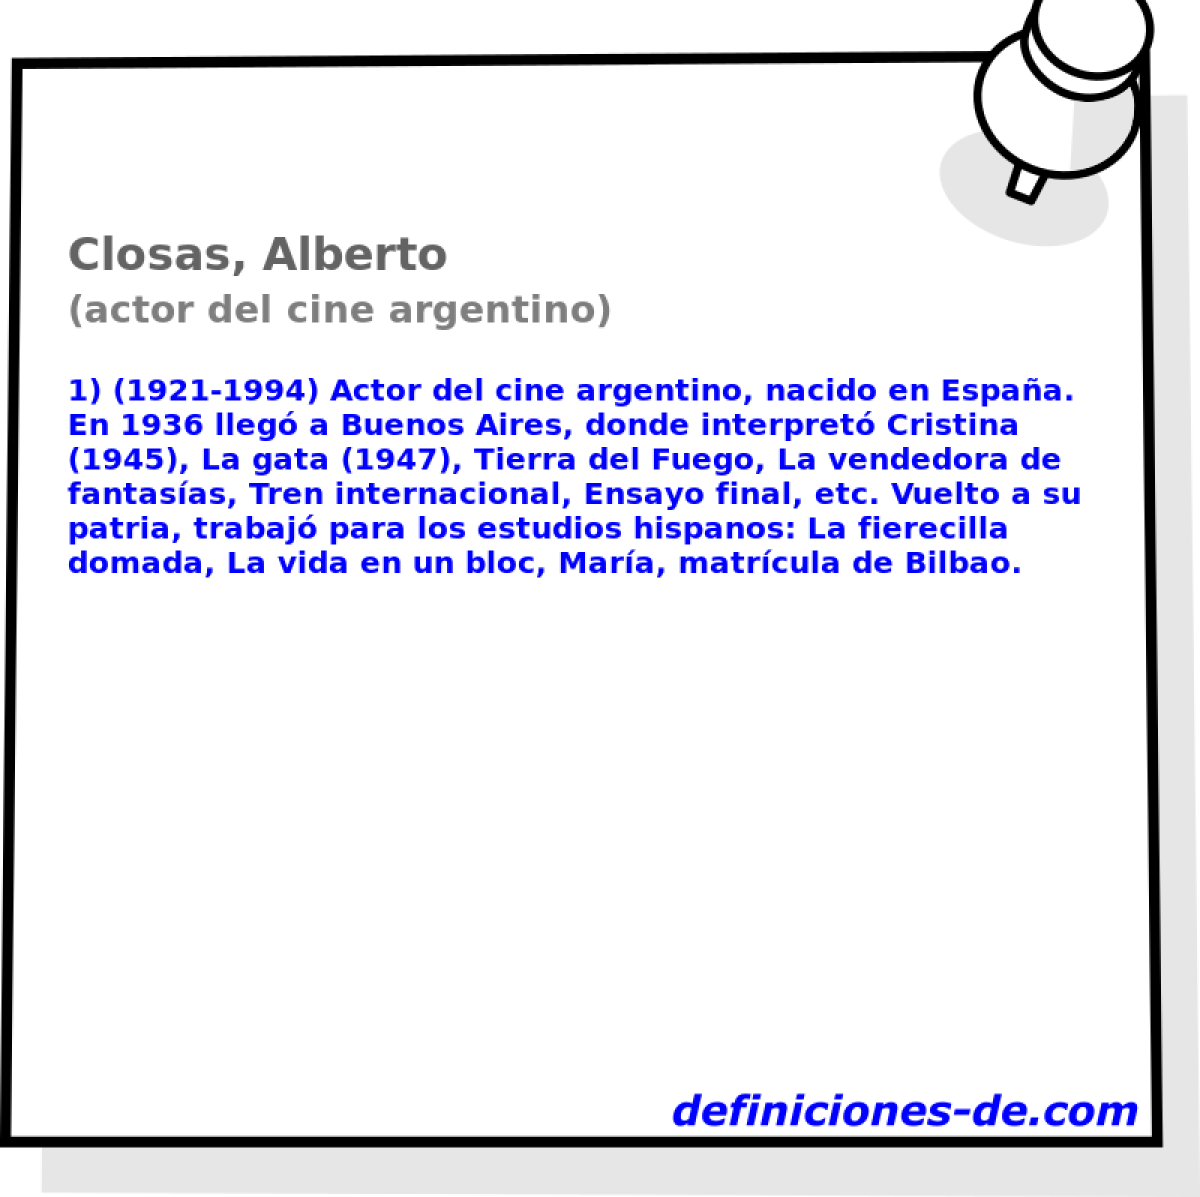 Closas, Alberto (actor del cine argentino)